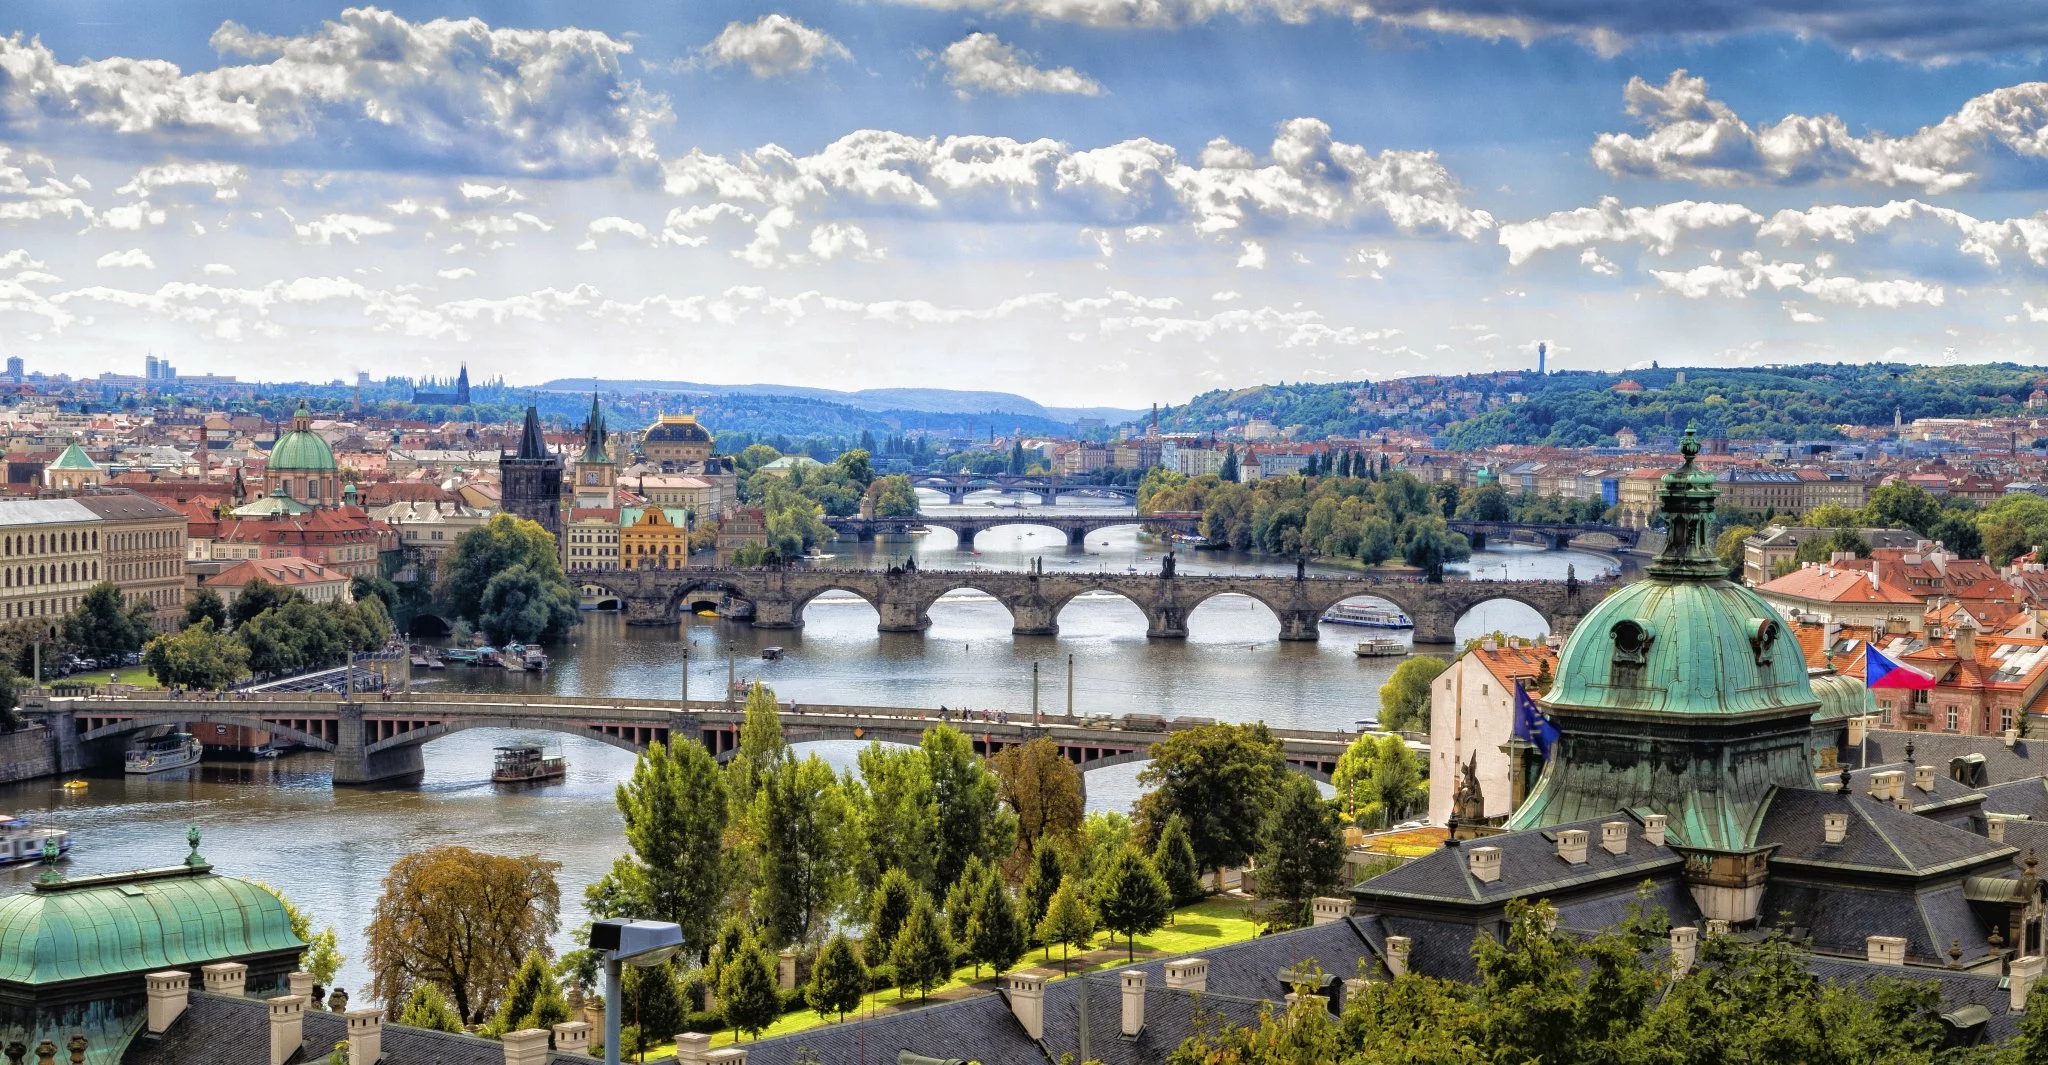 Hotels in Prague | Accommodation | Leonardo Hotels